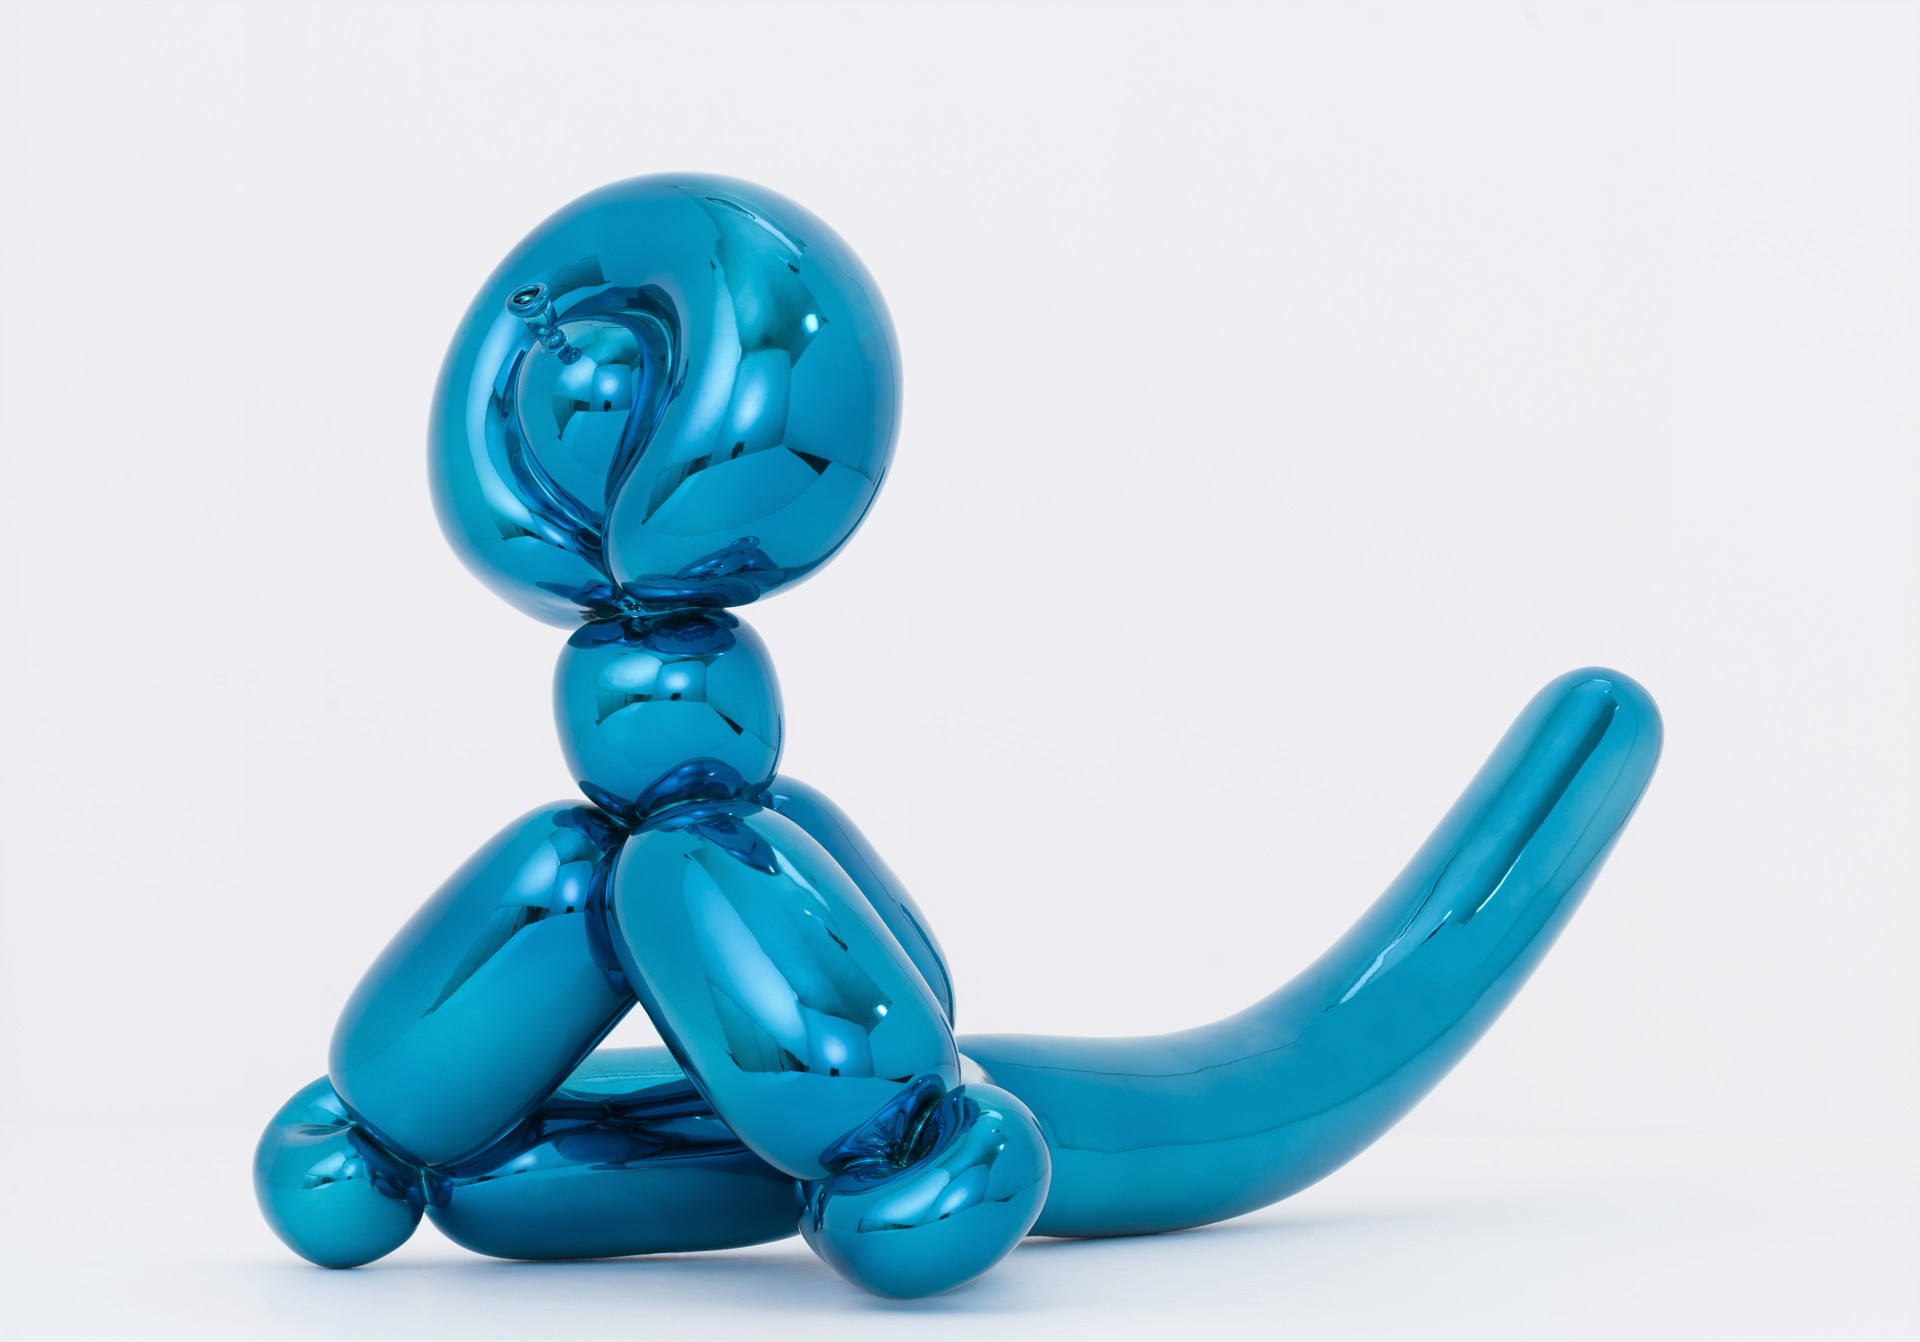 Balloon Monkey (Blue) By Jeff Koons by Jeff Koons